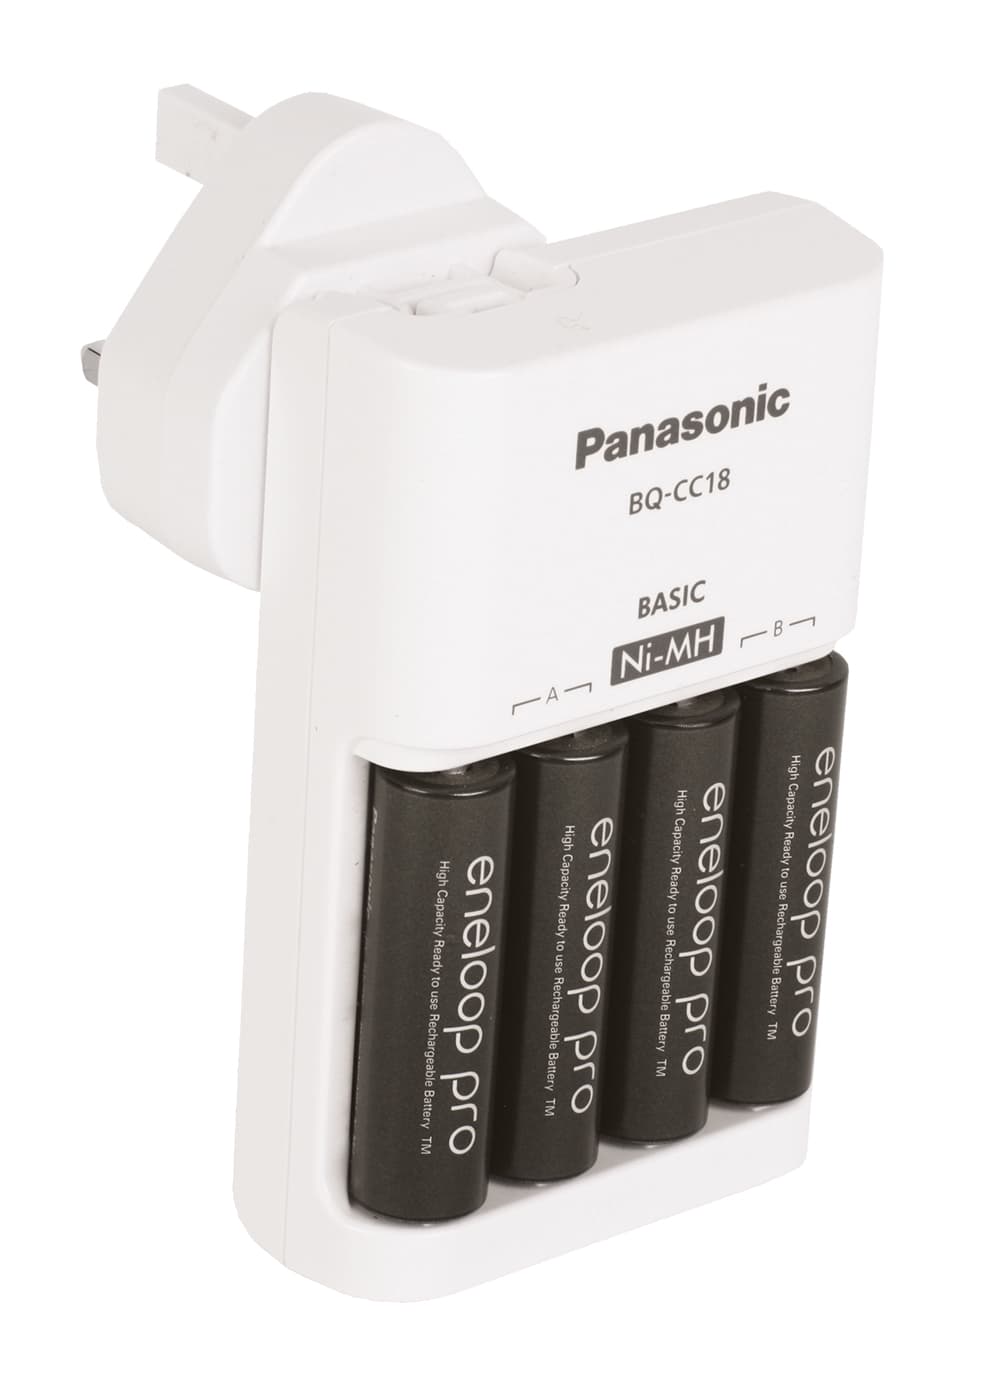 Eneloop-Pro-rechargeable-batteries